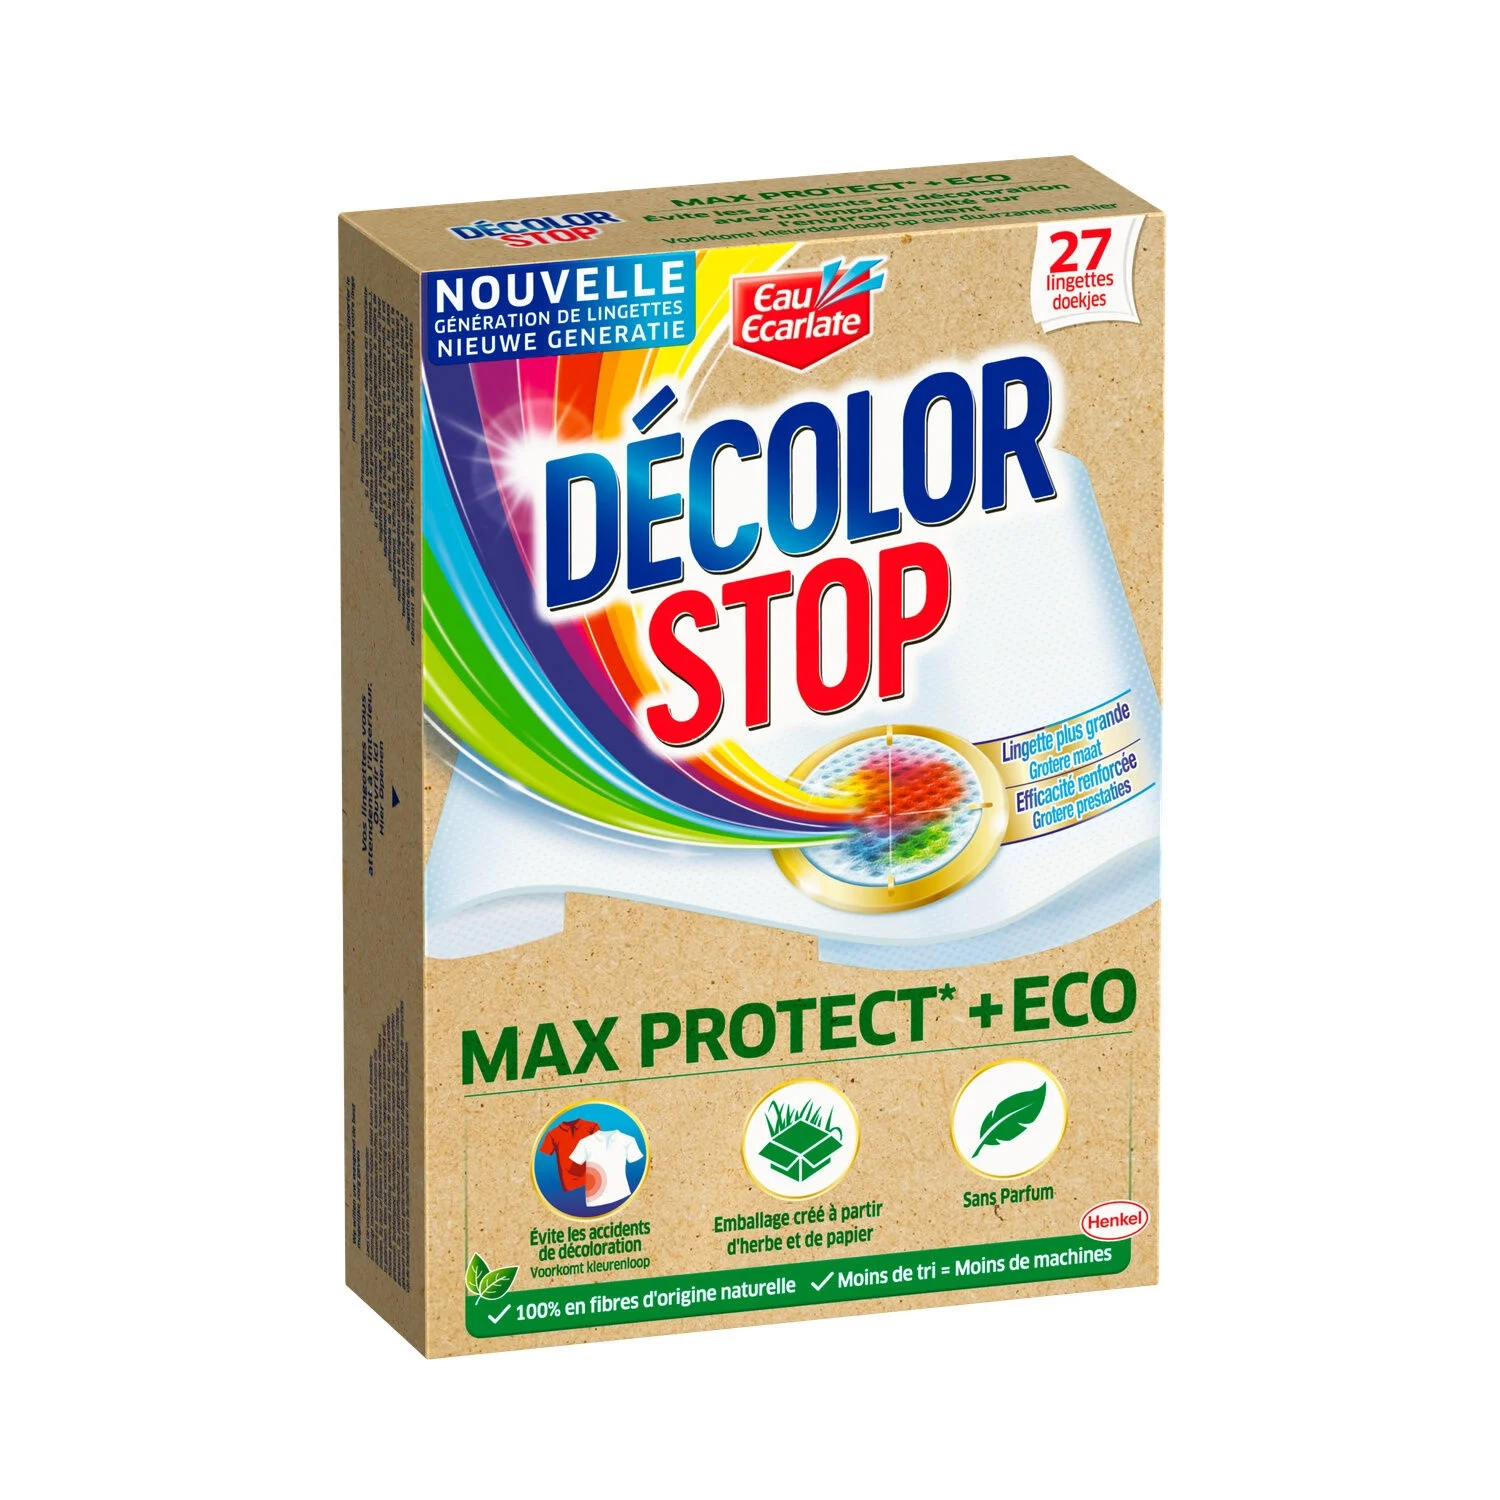 Lingette Anti-décoloration Max Protect Eco - Decolor Stop